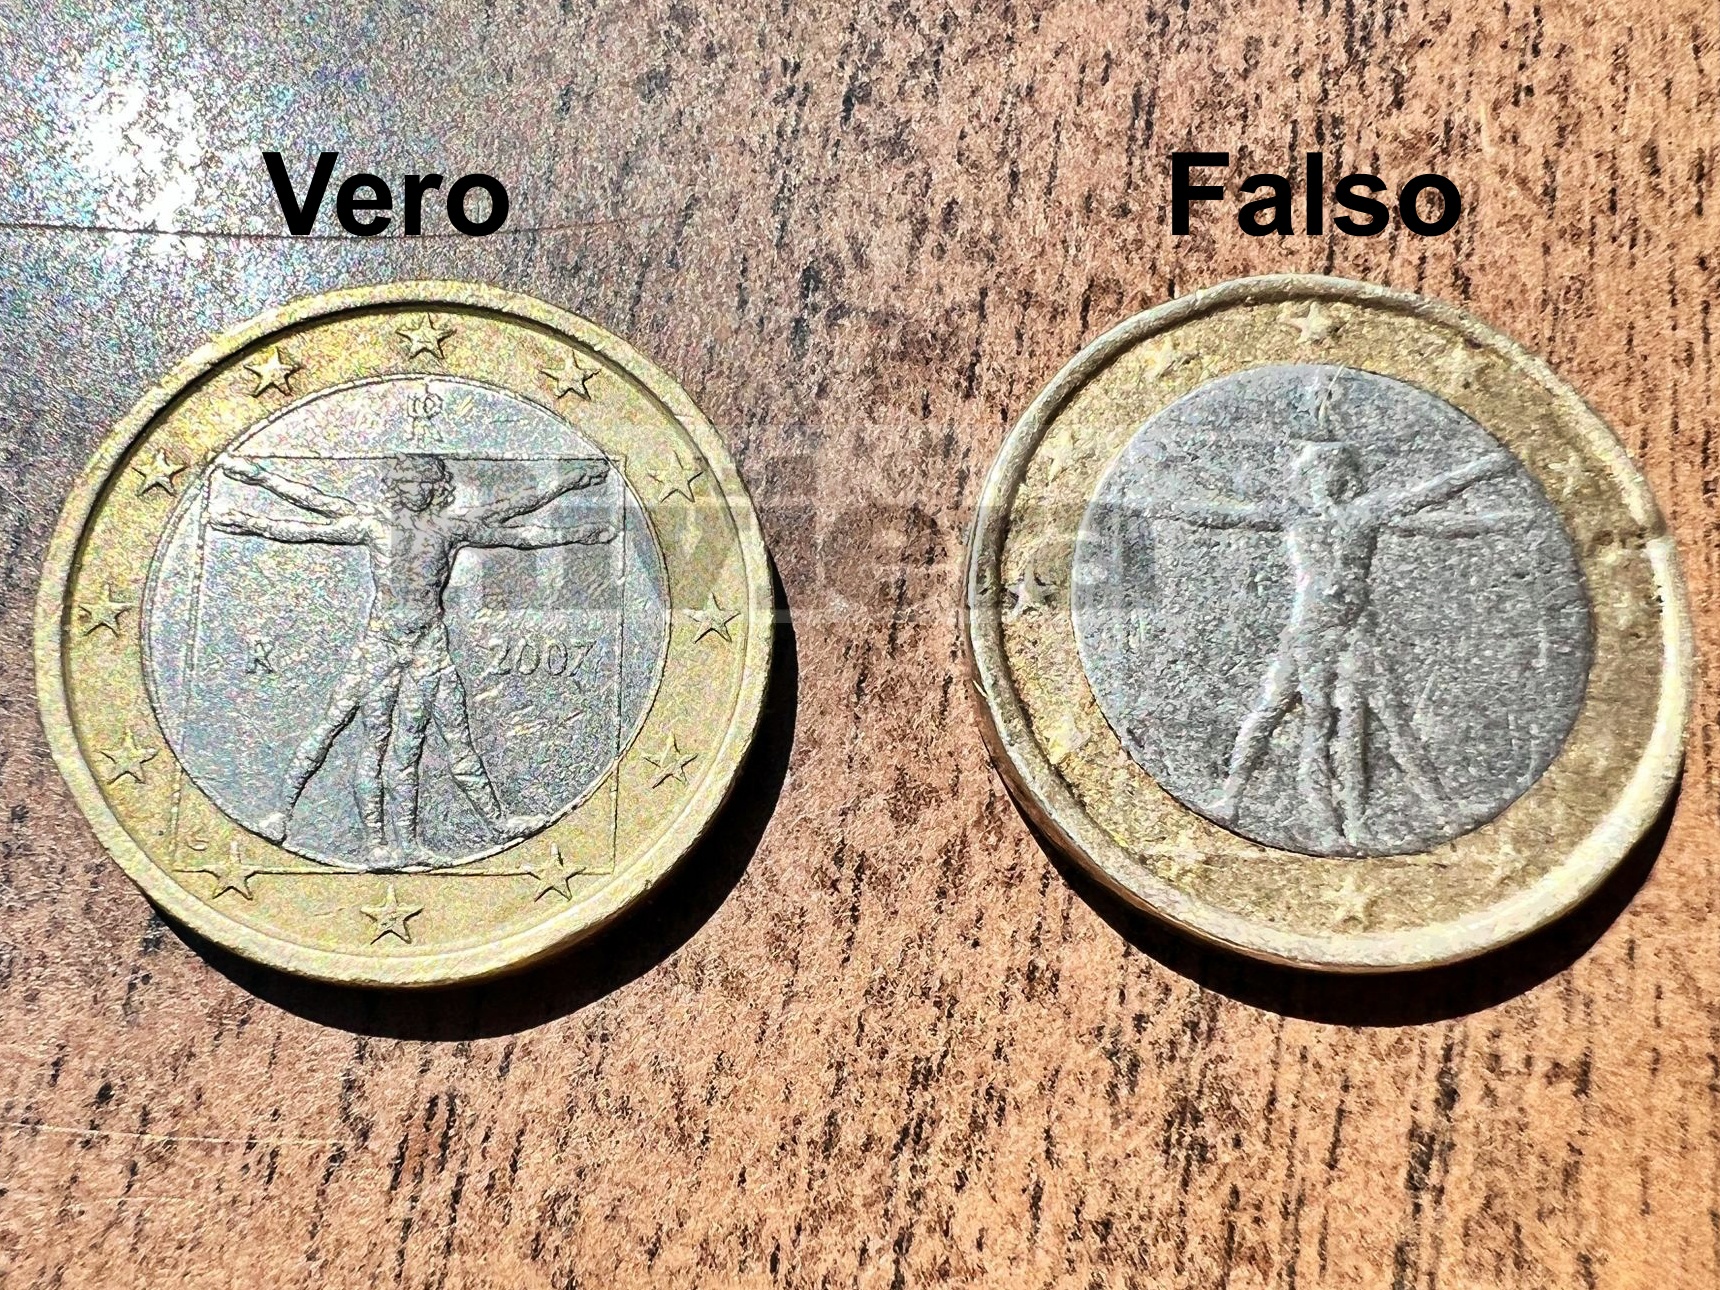 Attenzione alle monete da 1 euro false, ne girano parecchie: ecco come  riconoscerle - Prima la Riviera